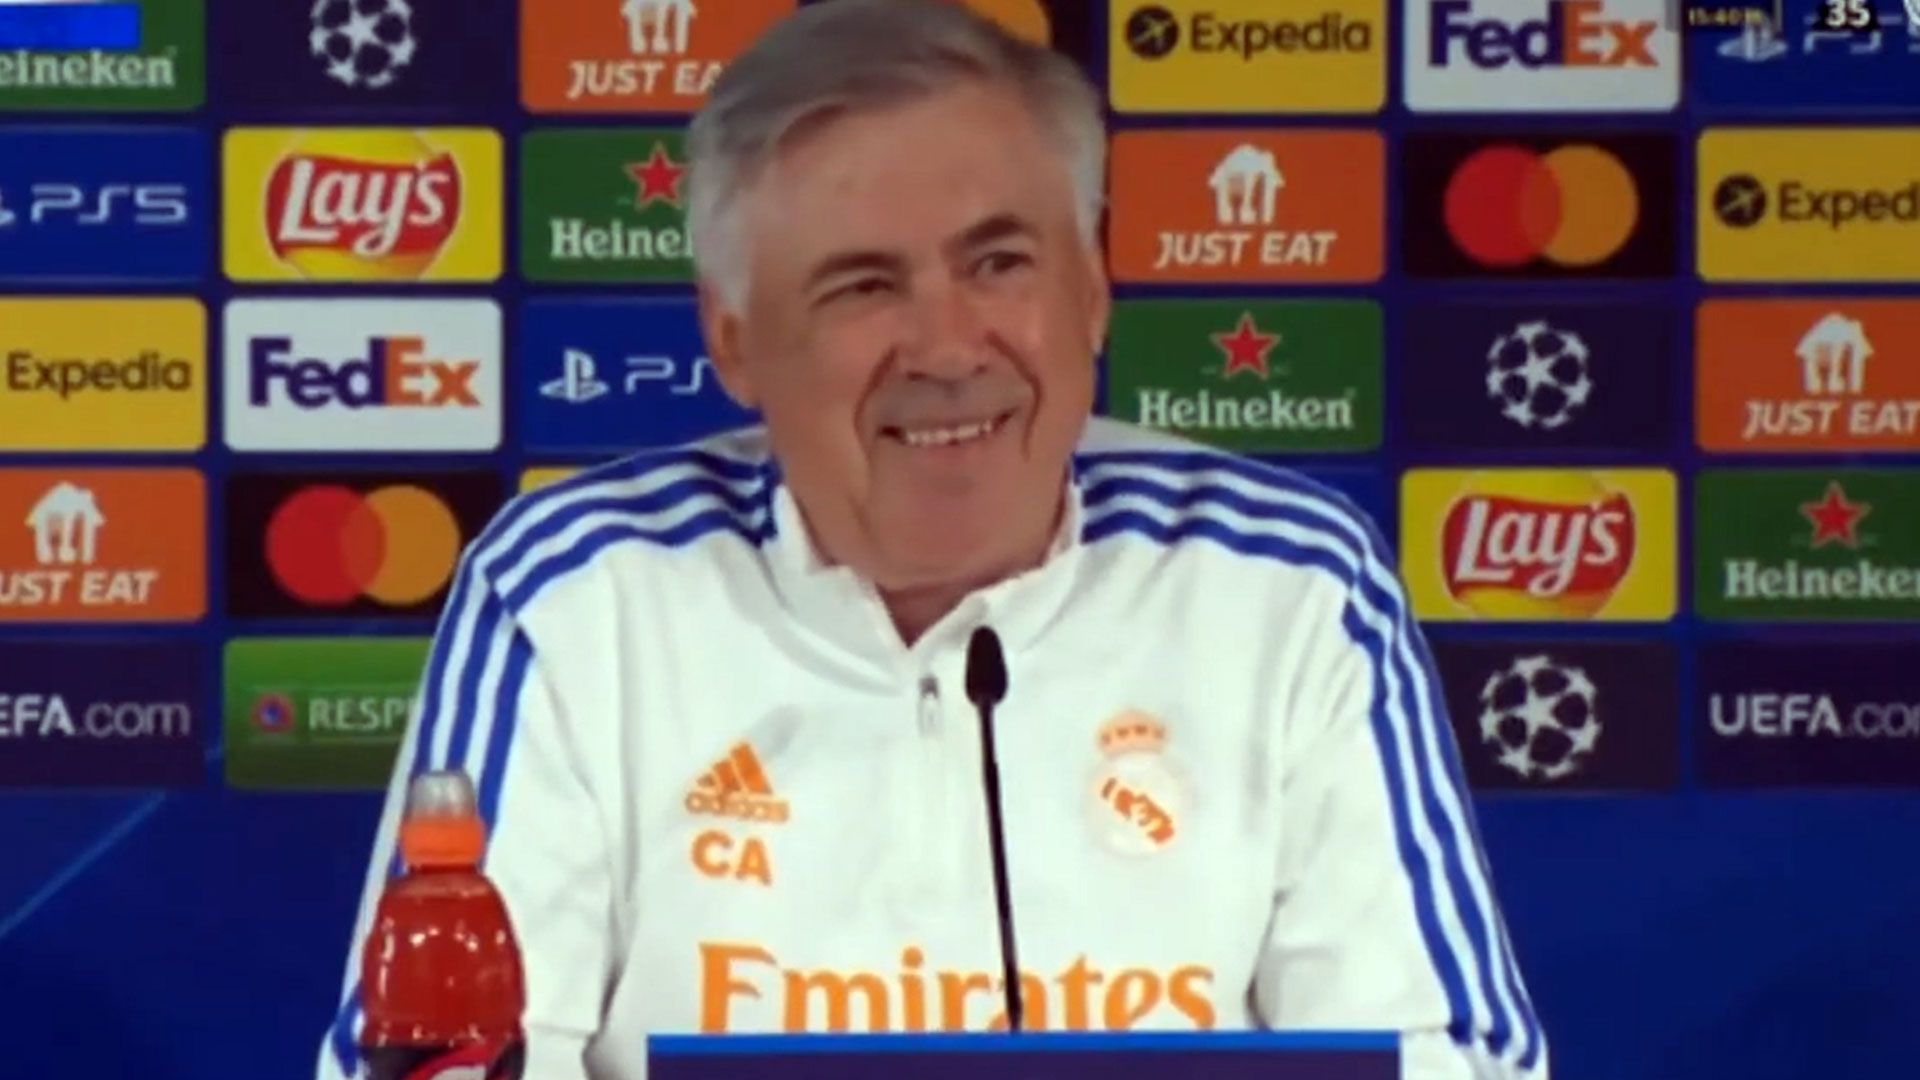 La singular respuesta de Ancelotti que provocó risas en la previa de la Champions League: “Si tengo un jugador gordo...”